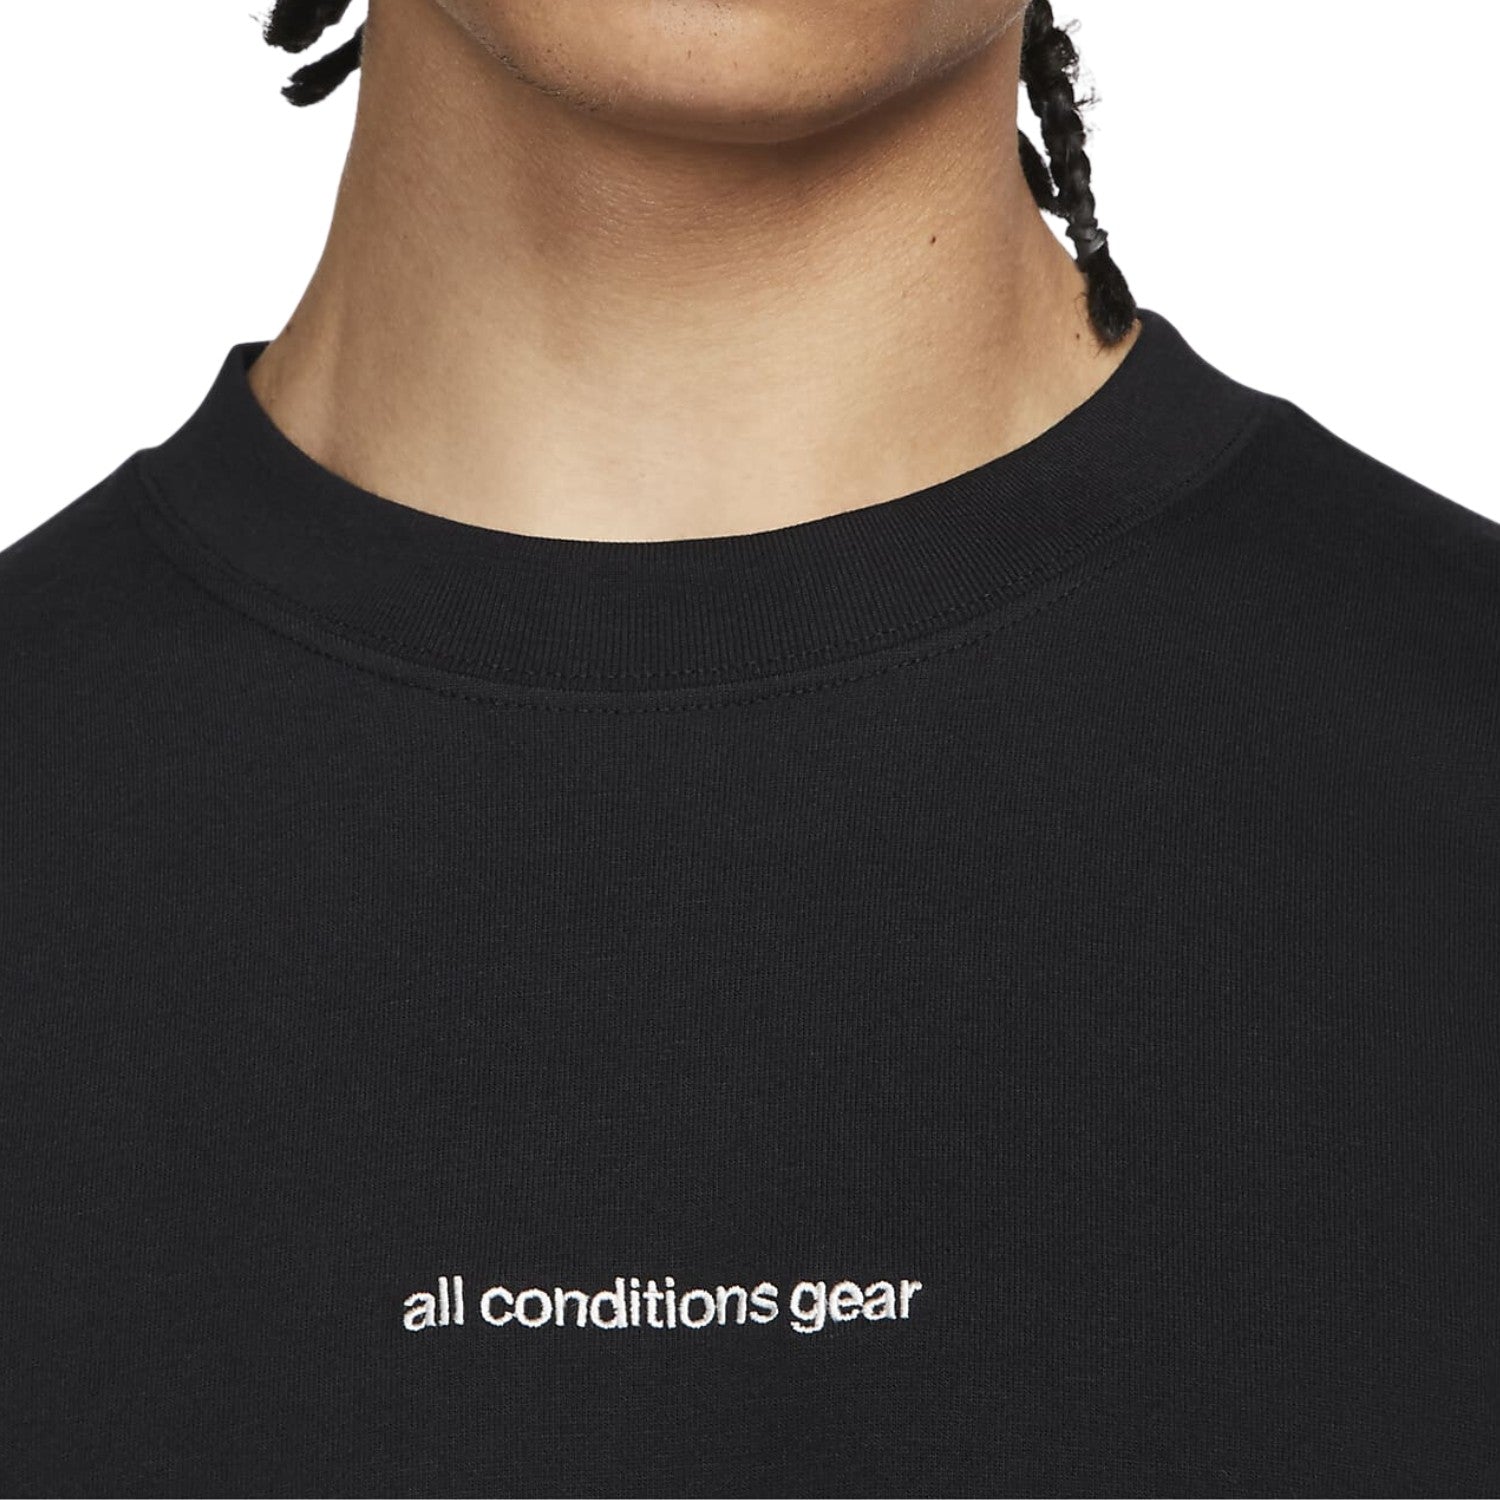 Nike Acg Men's T-shirt Mens Style : Fj2137